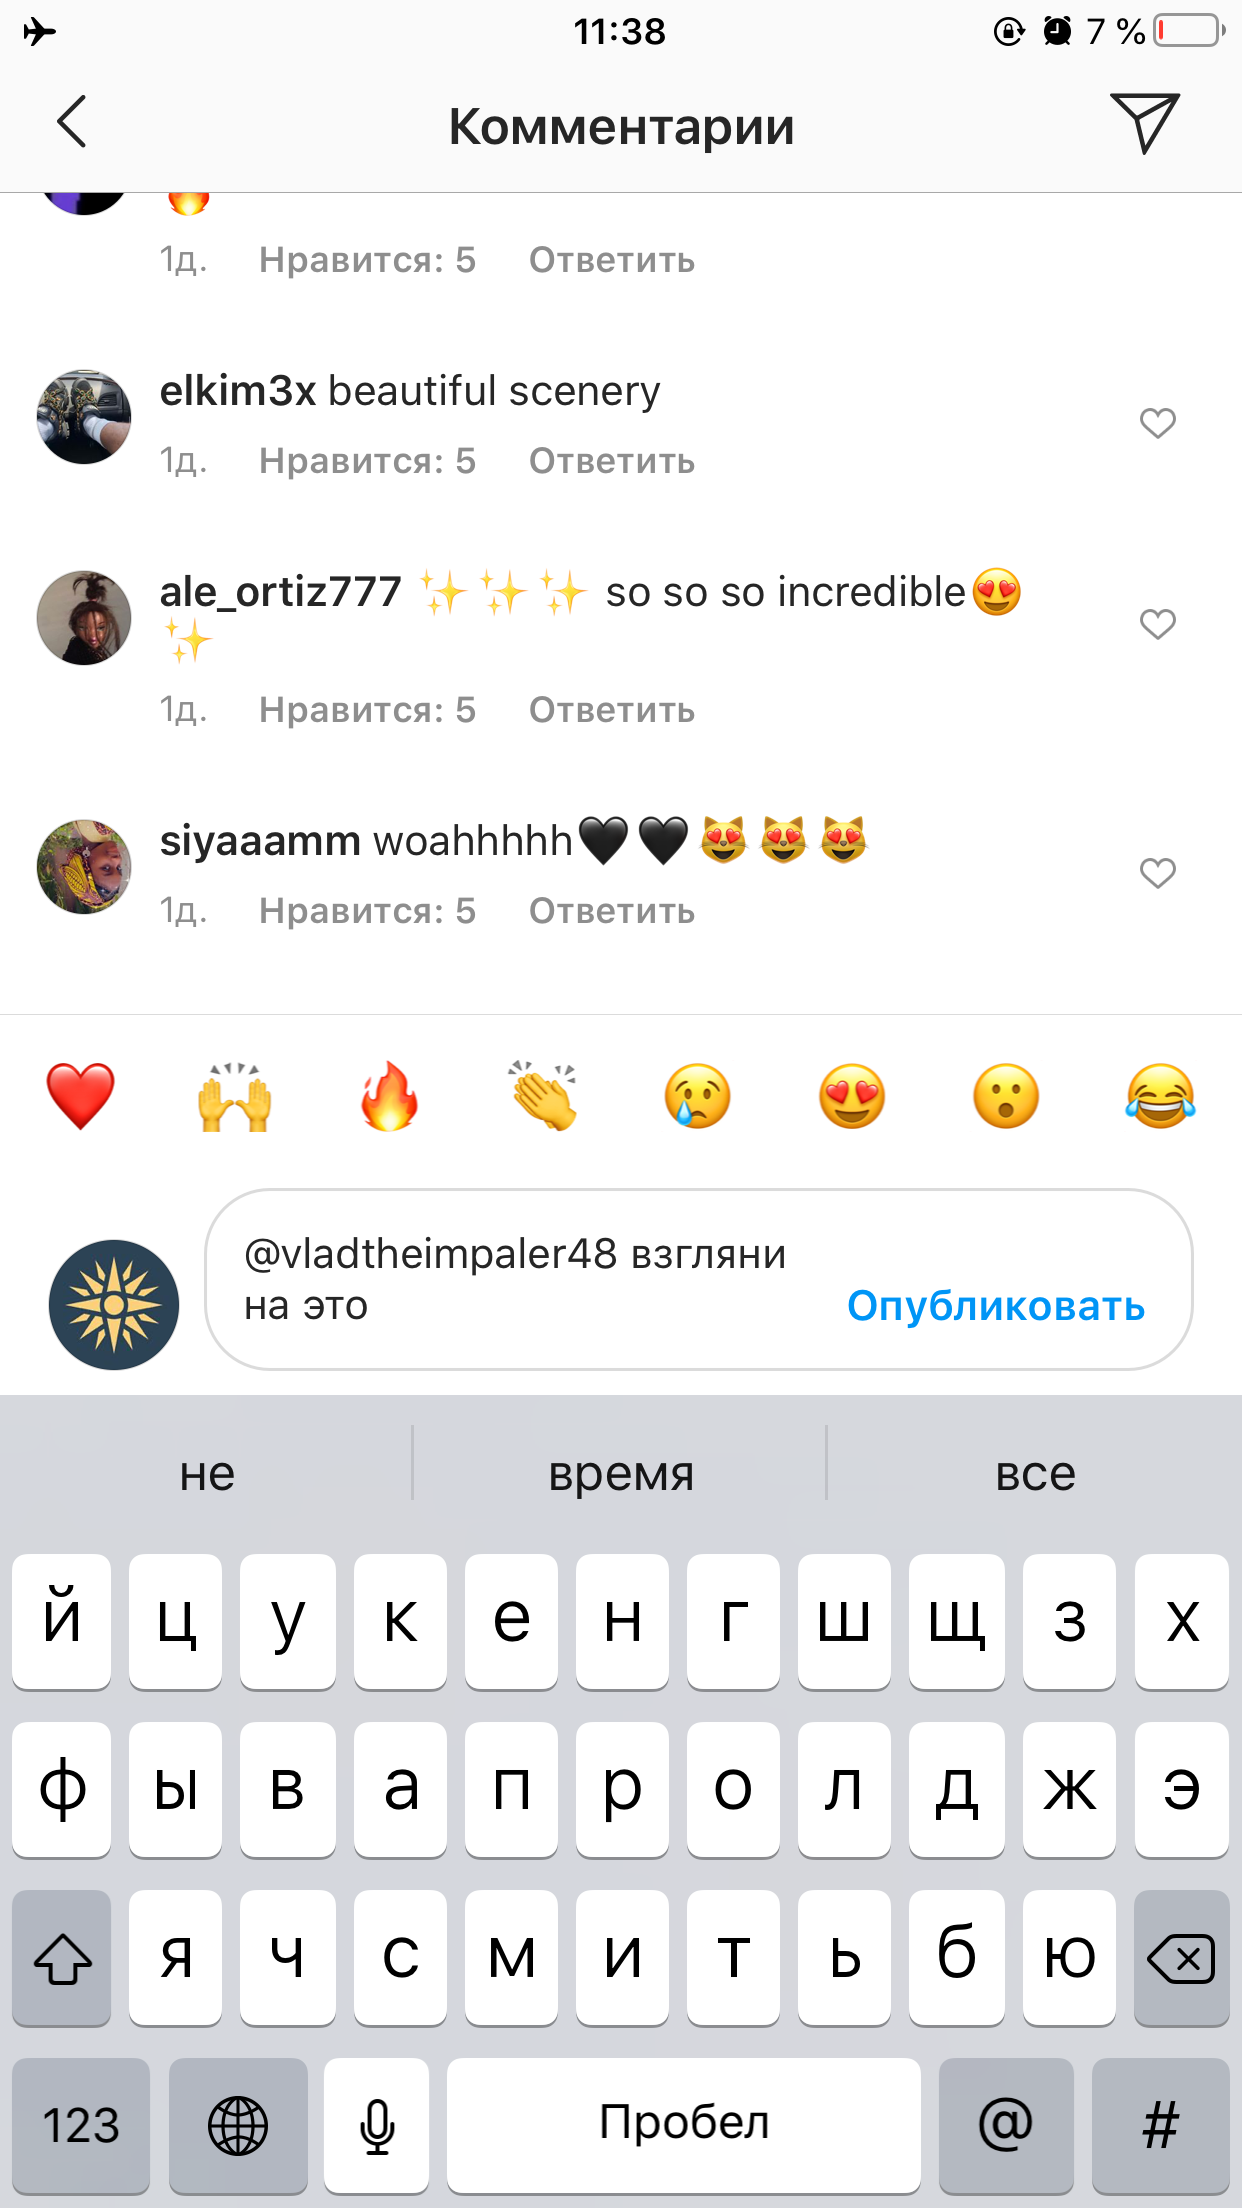 Как отметить друга на фото в Одноклассниках? — manikyrsha.ru — всё о digital